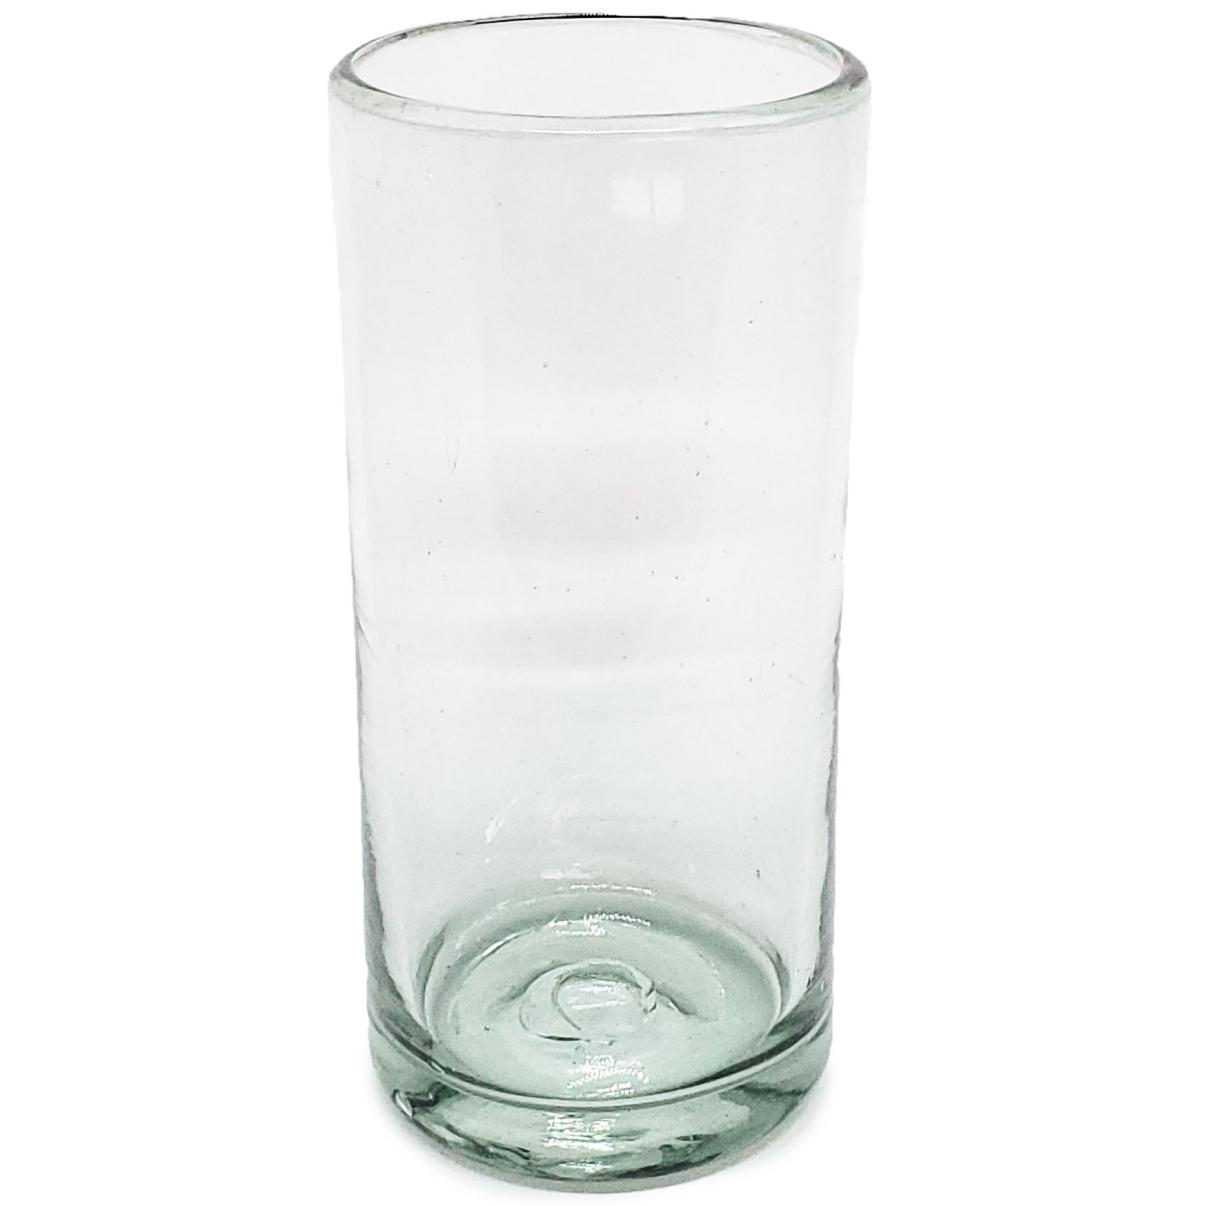 VIDRIO SOPLADO / Juego de 6 vasos Jumbo transparentes / ste clsico juego de vasos jumbo est hecho con vidrio reciclado. Contiene pequeas burbujas atrapadas en el vaso.